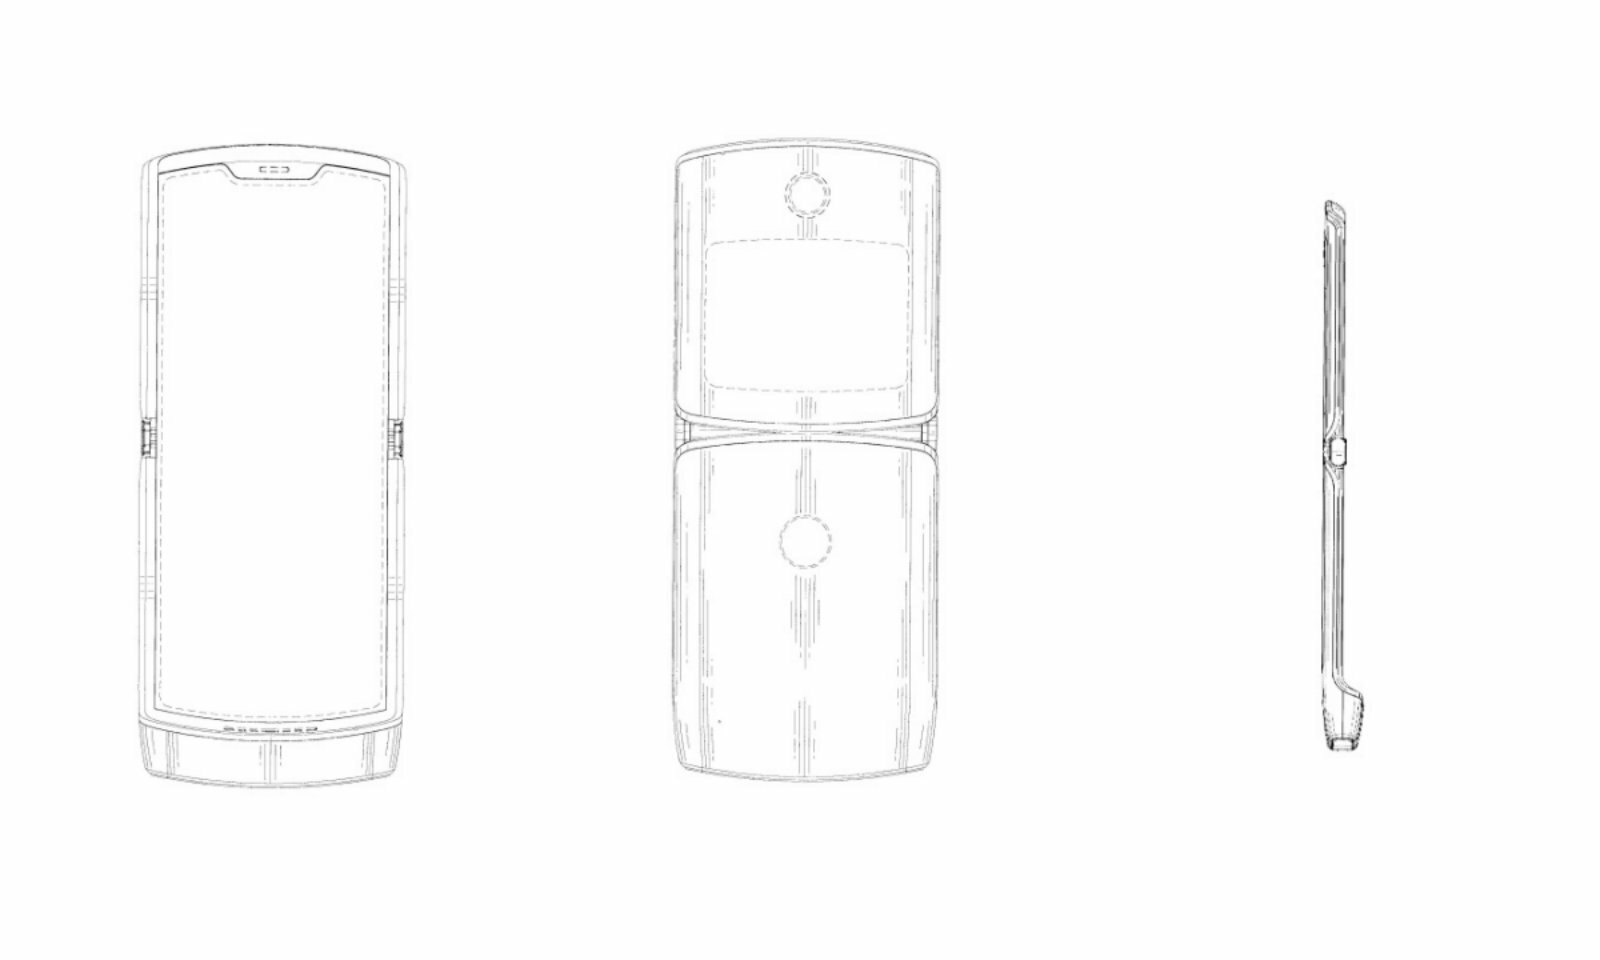 Δίπλωμα ευρεσιτεχνίας της Motorola αποκαλύπτει ένα τύπου RAZR κινητό με αναδιπλούμενη οθόνη